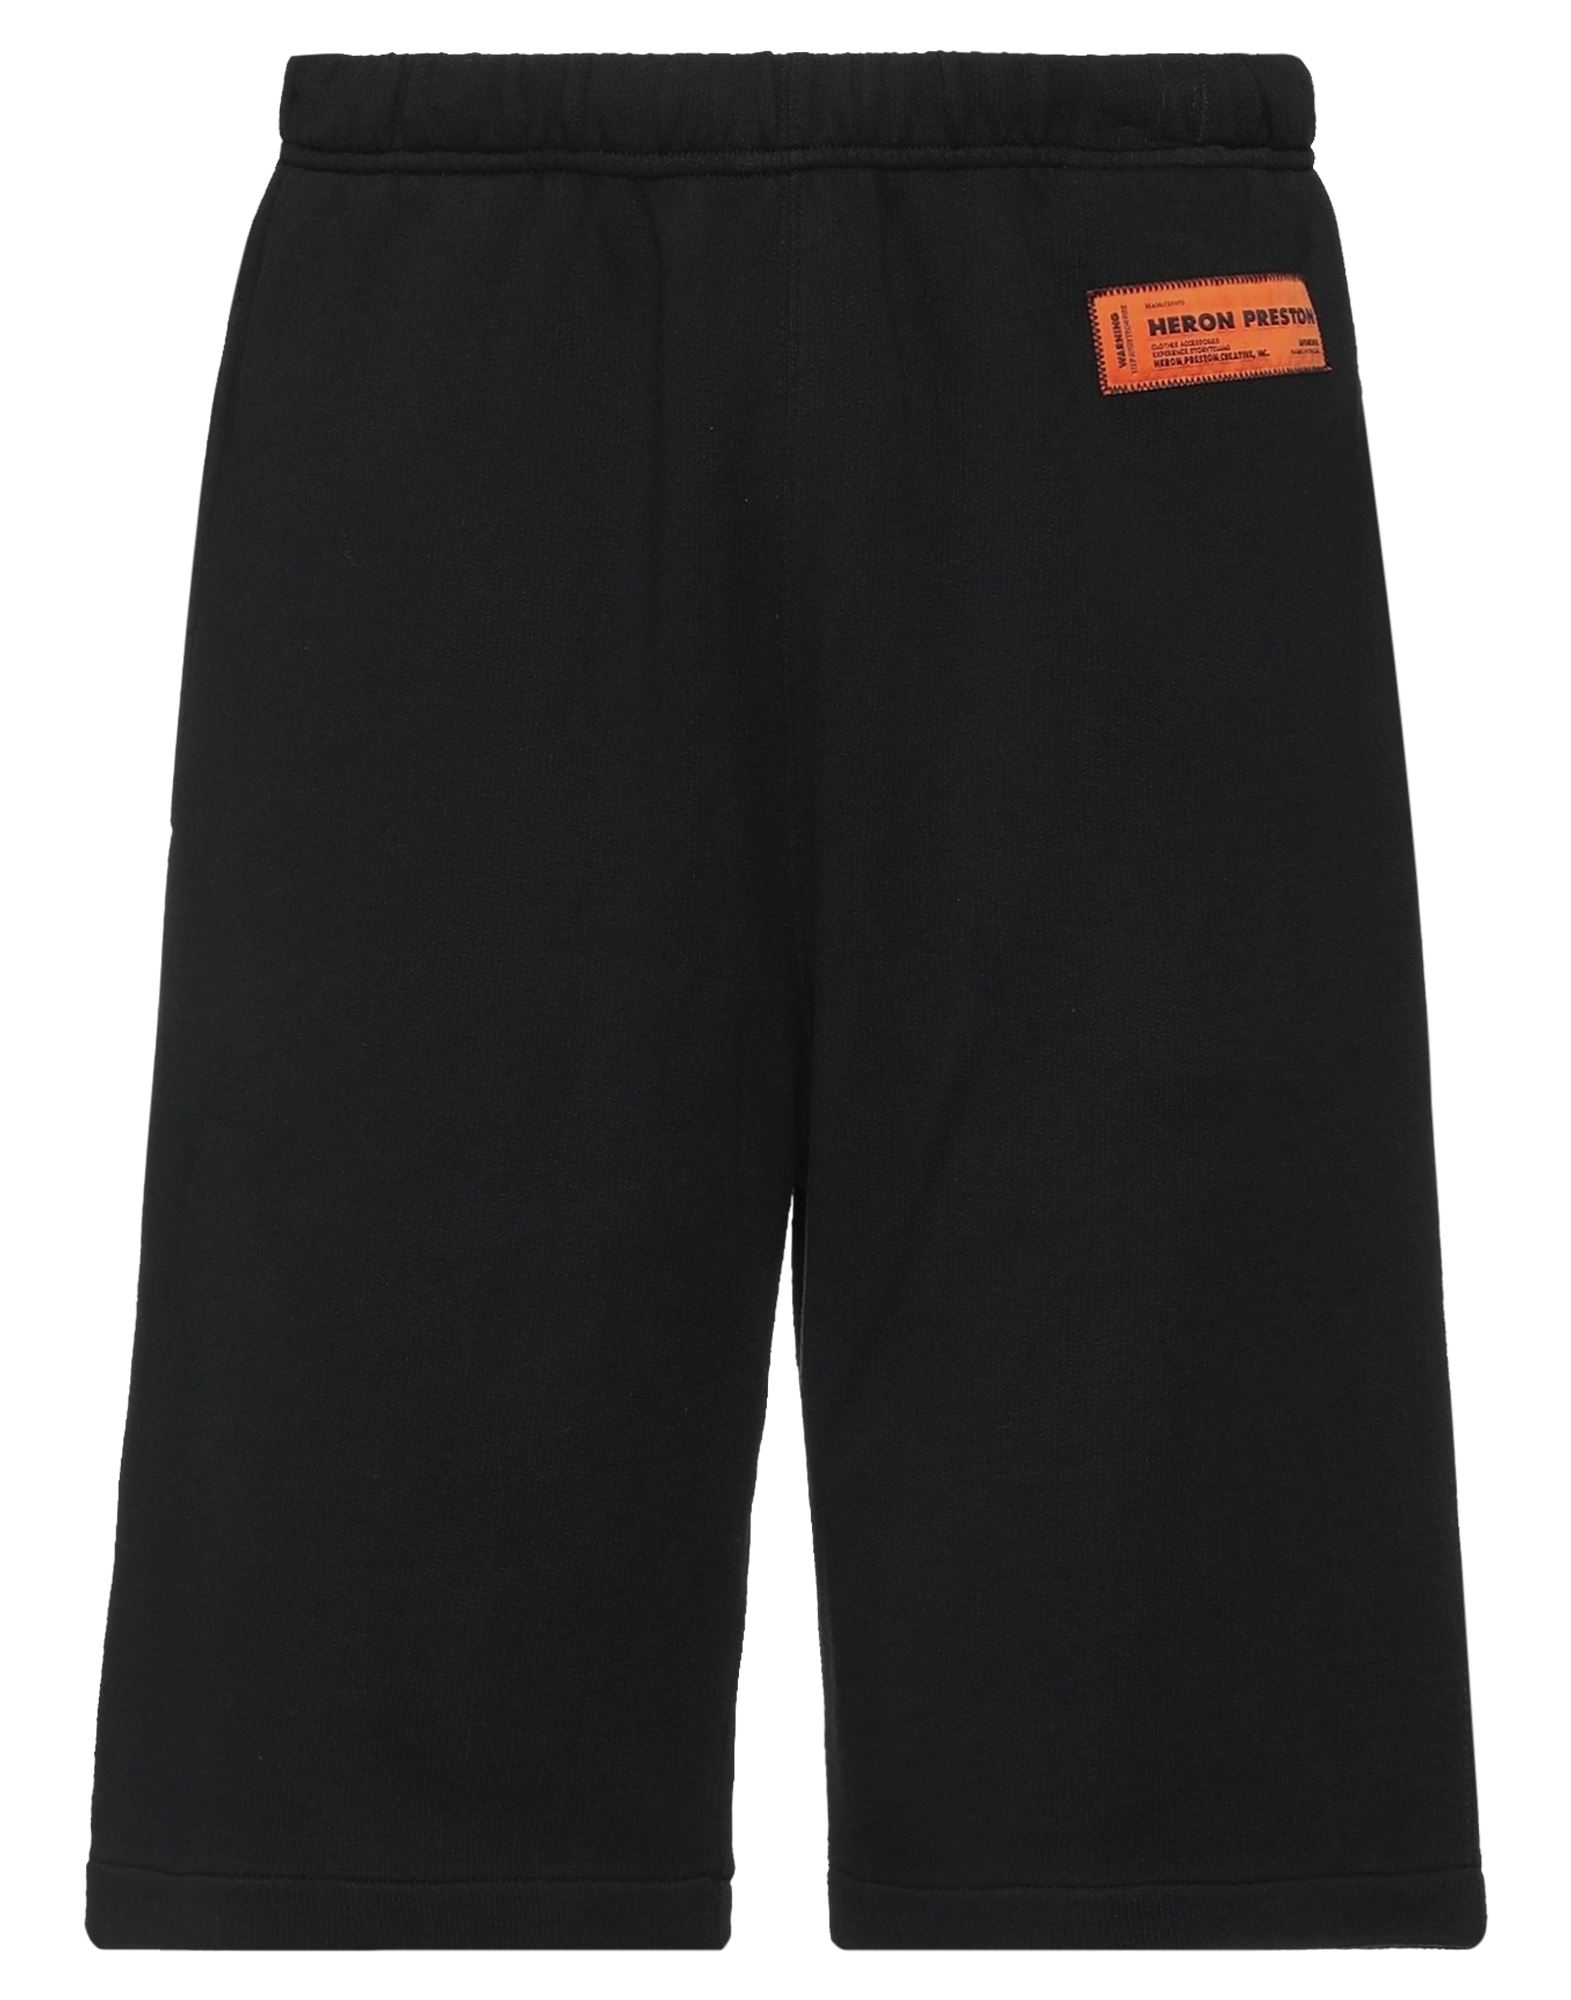 Shop Heron Preston Man Shorts & Bermuda Shorts Black Size L Cotton, Polyester